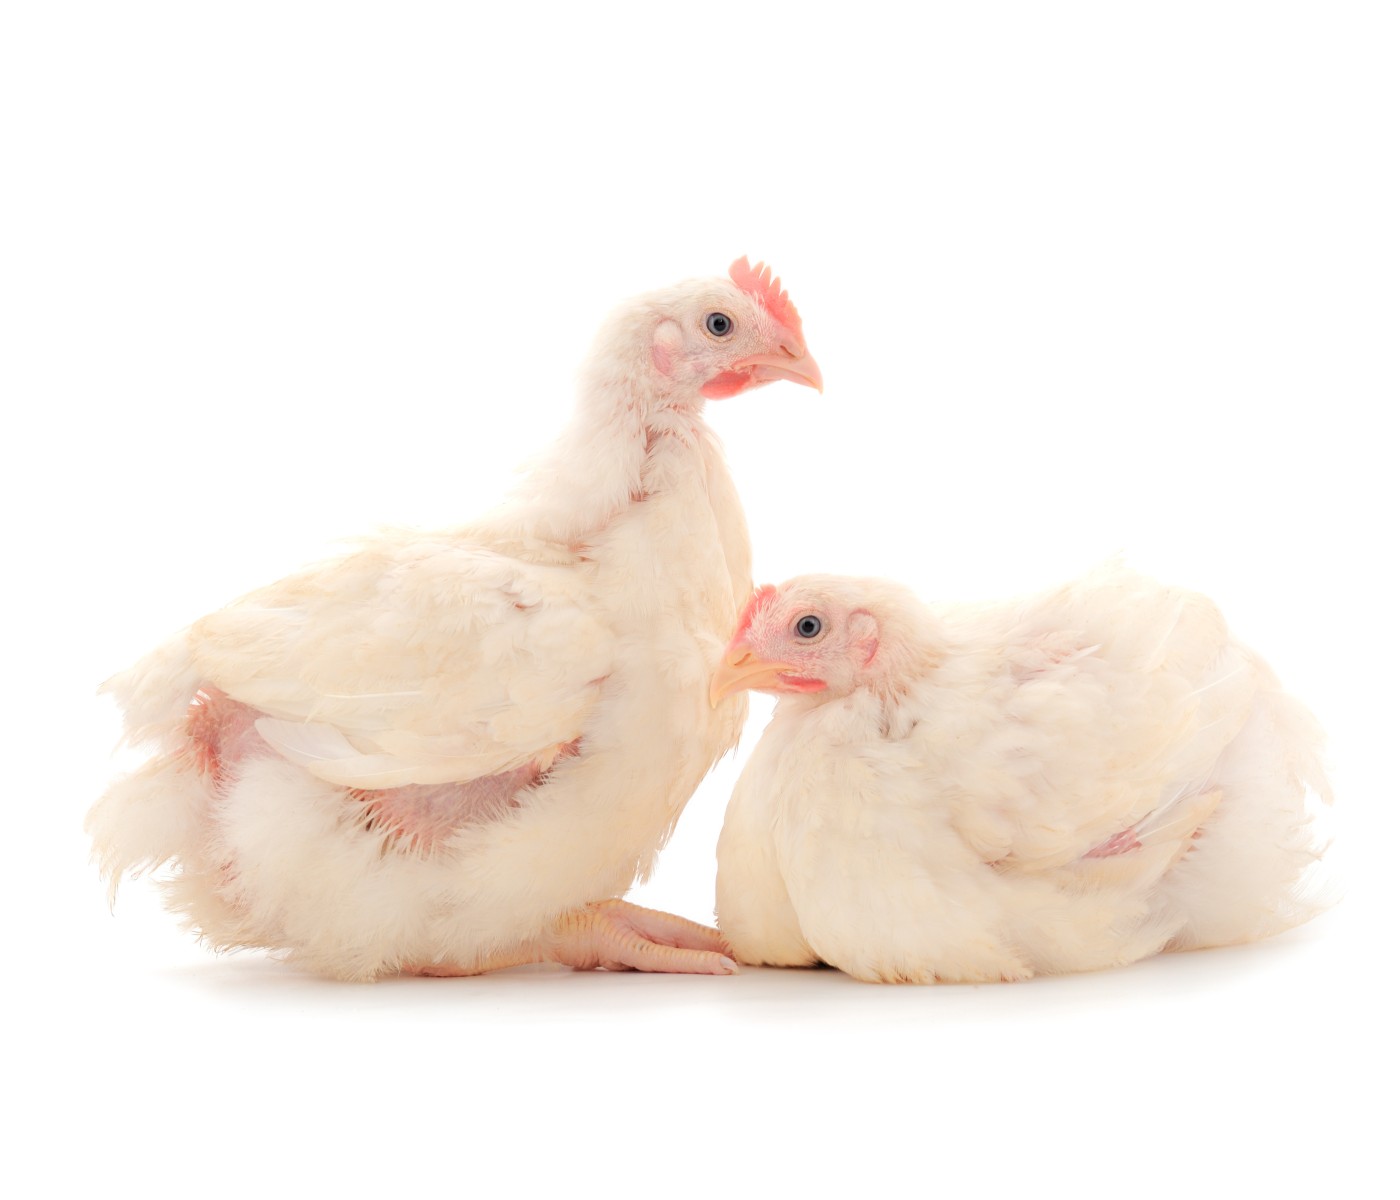 EE.UU.: Sector avícola actualiza pautas de bienestar para pollos de engorde